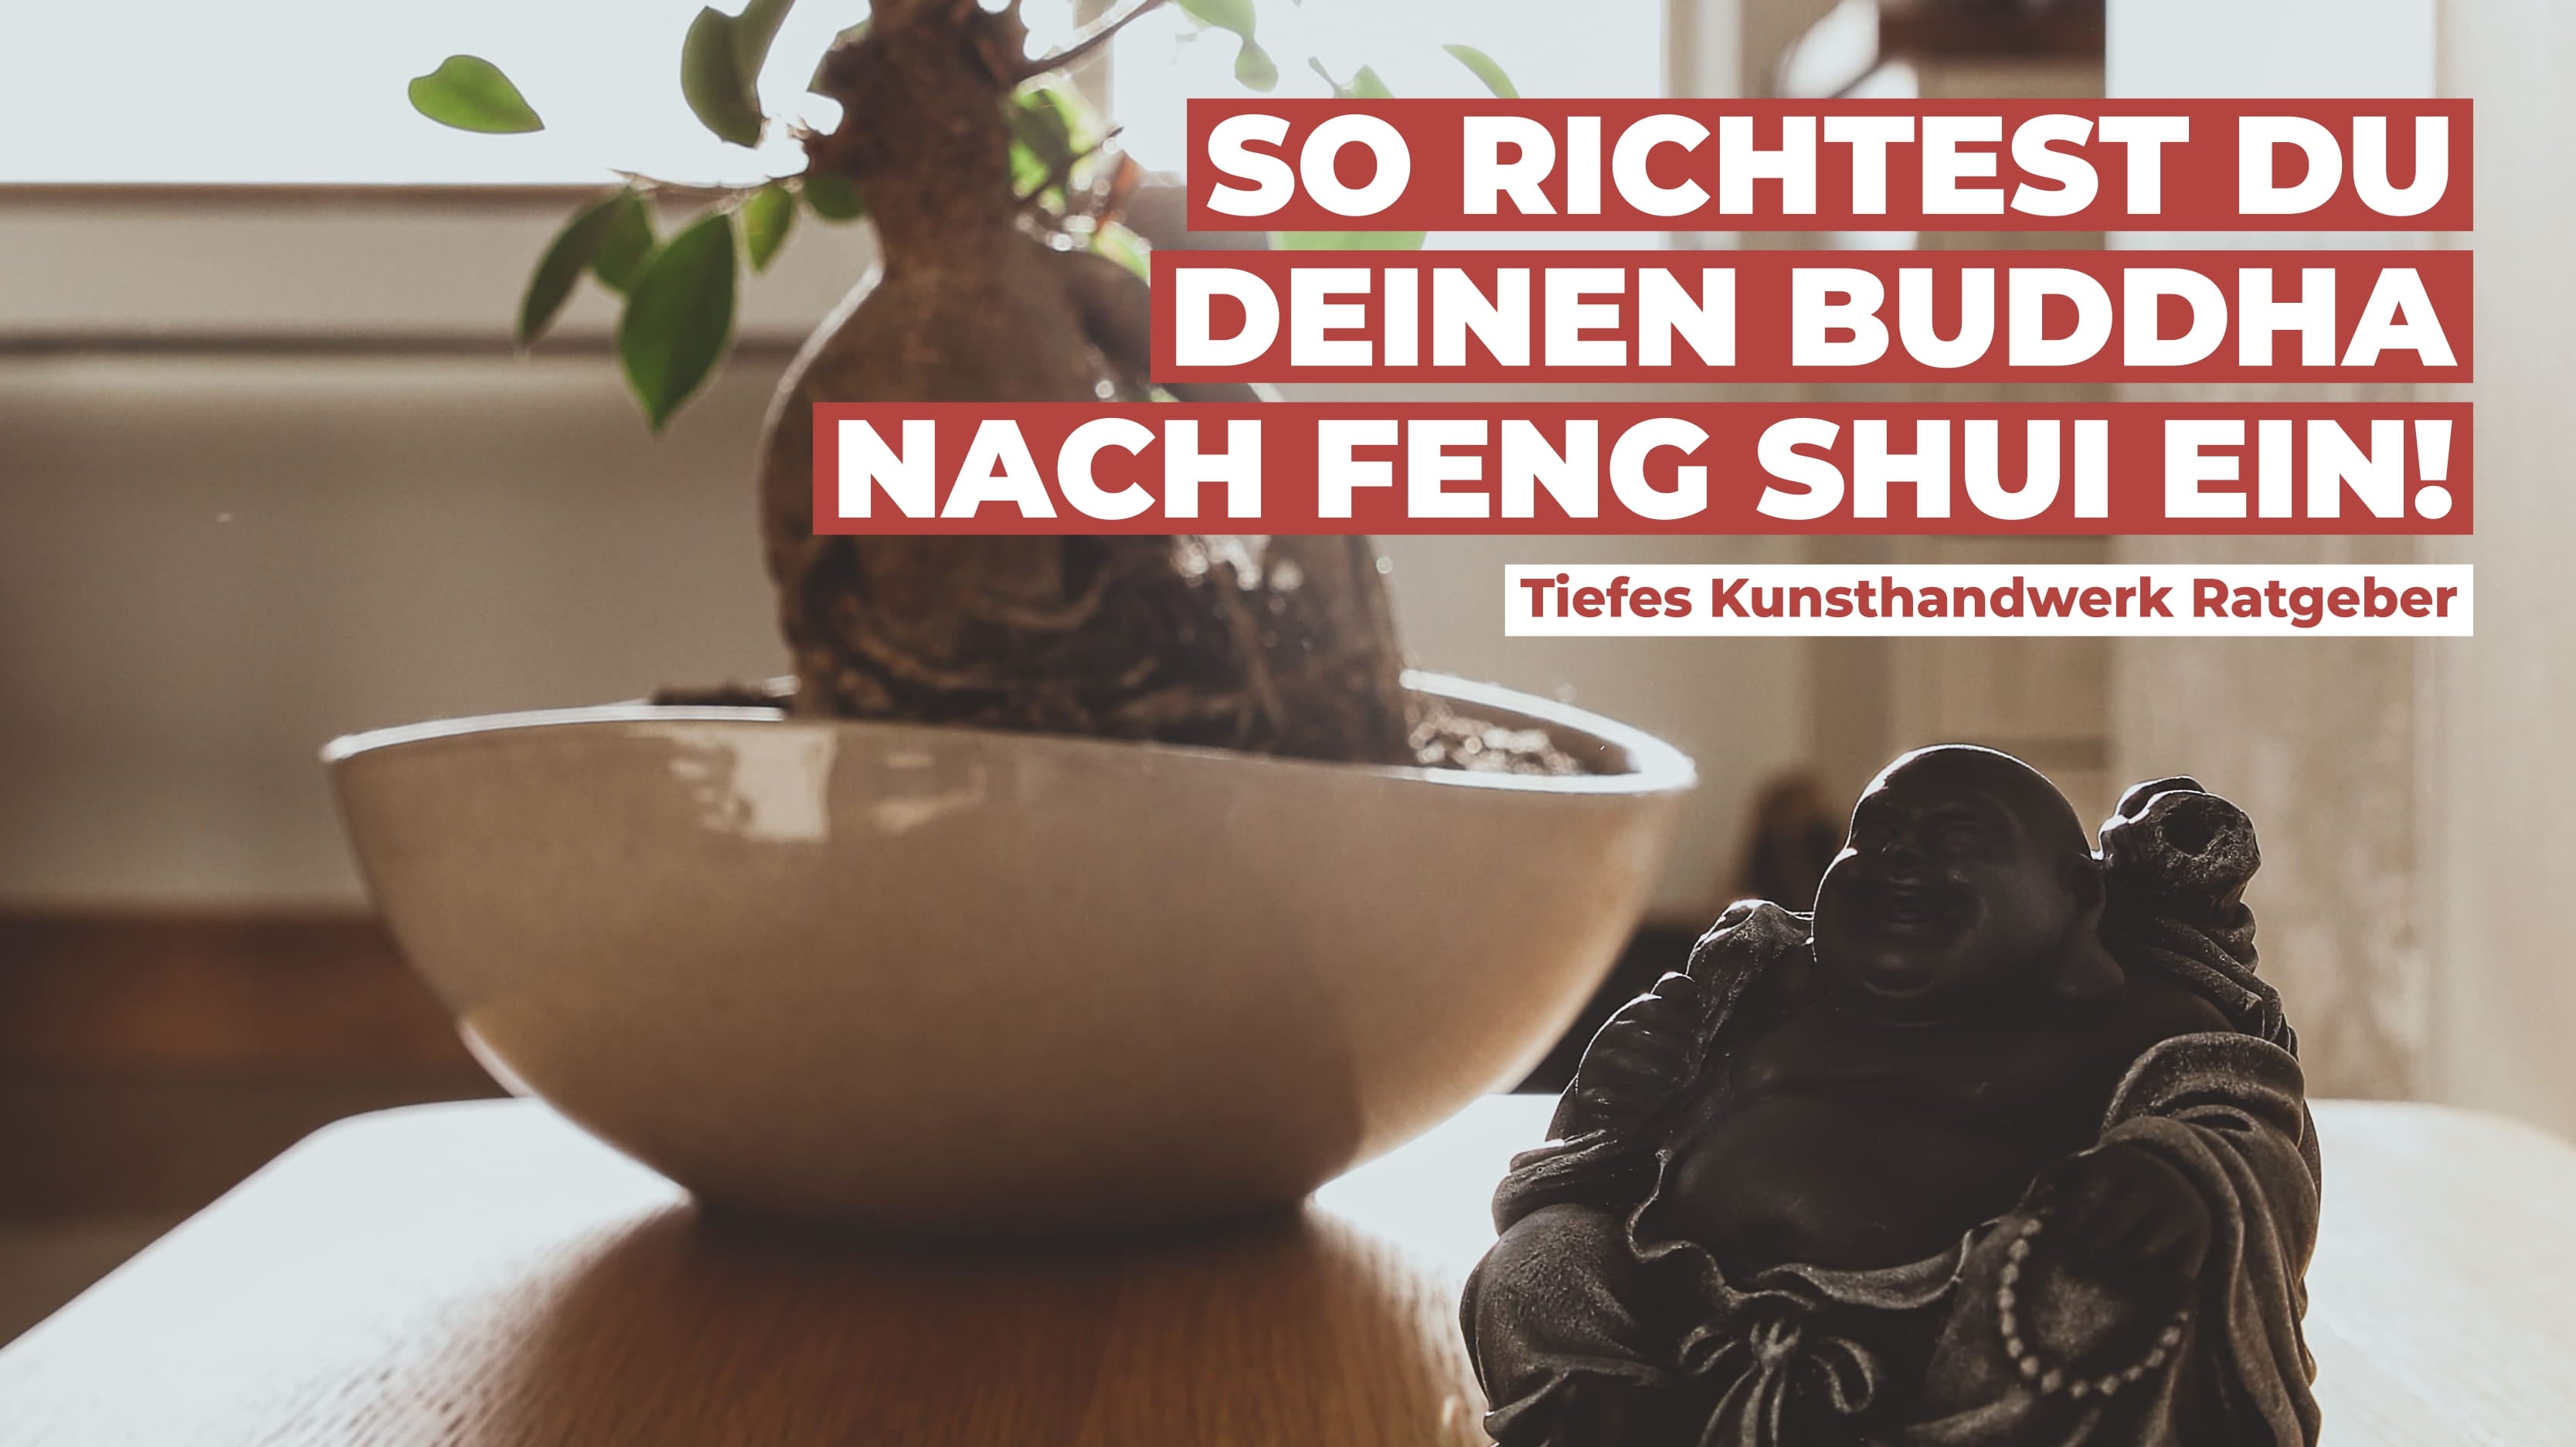 So richtest du deinen Buddha nach Feng Shui ein - Tiefes Kunsthandwerk